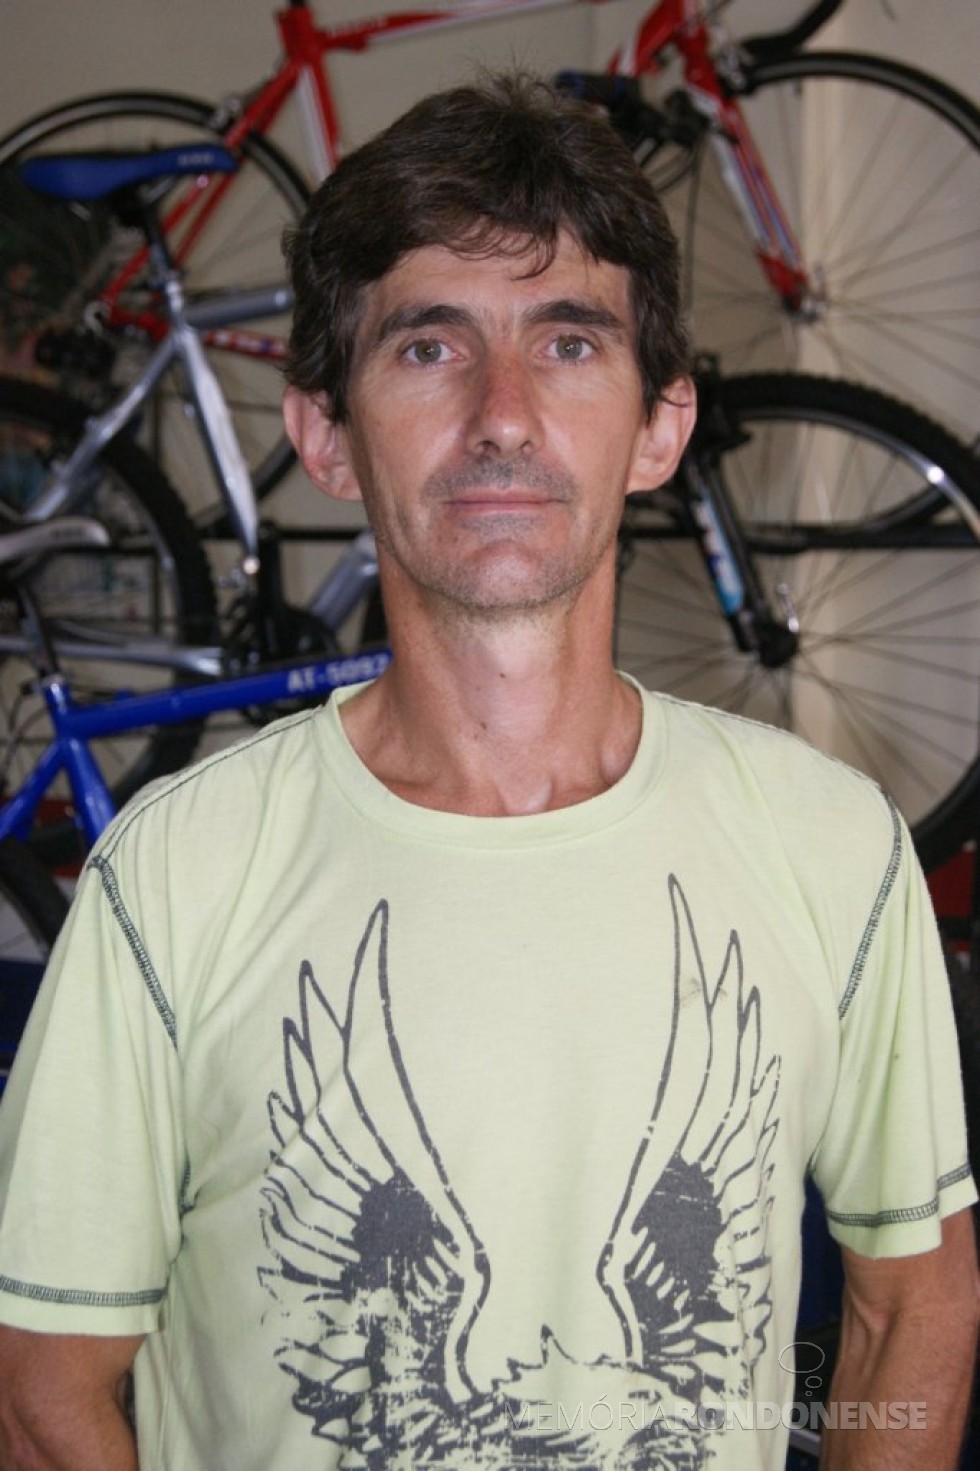 || Ciclista rondonense Paul Lírio Berwig - vencedor  da 3ª  etapa do Campeonato Paranaense de Ciclismo, em final de setembro de 2009.
Imagem: Acervo do ciclista - FOTO 7 - 